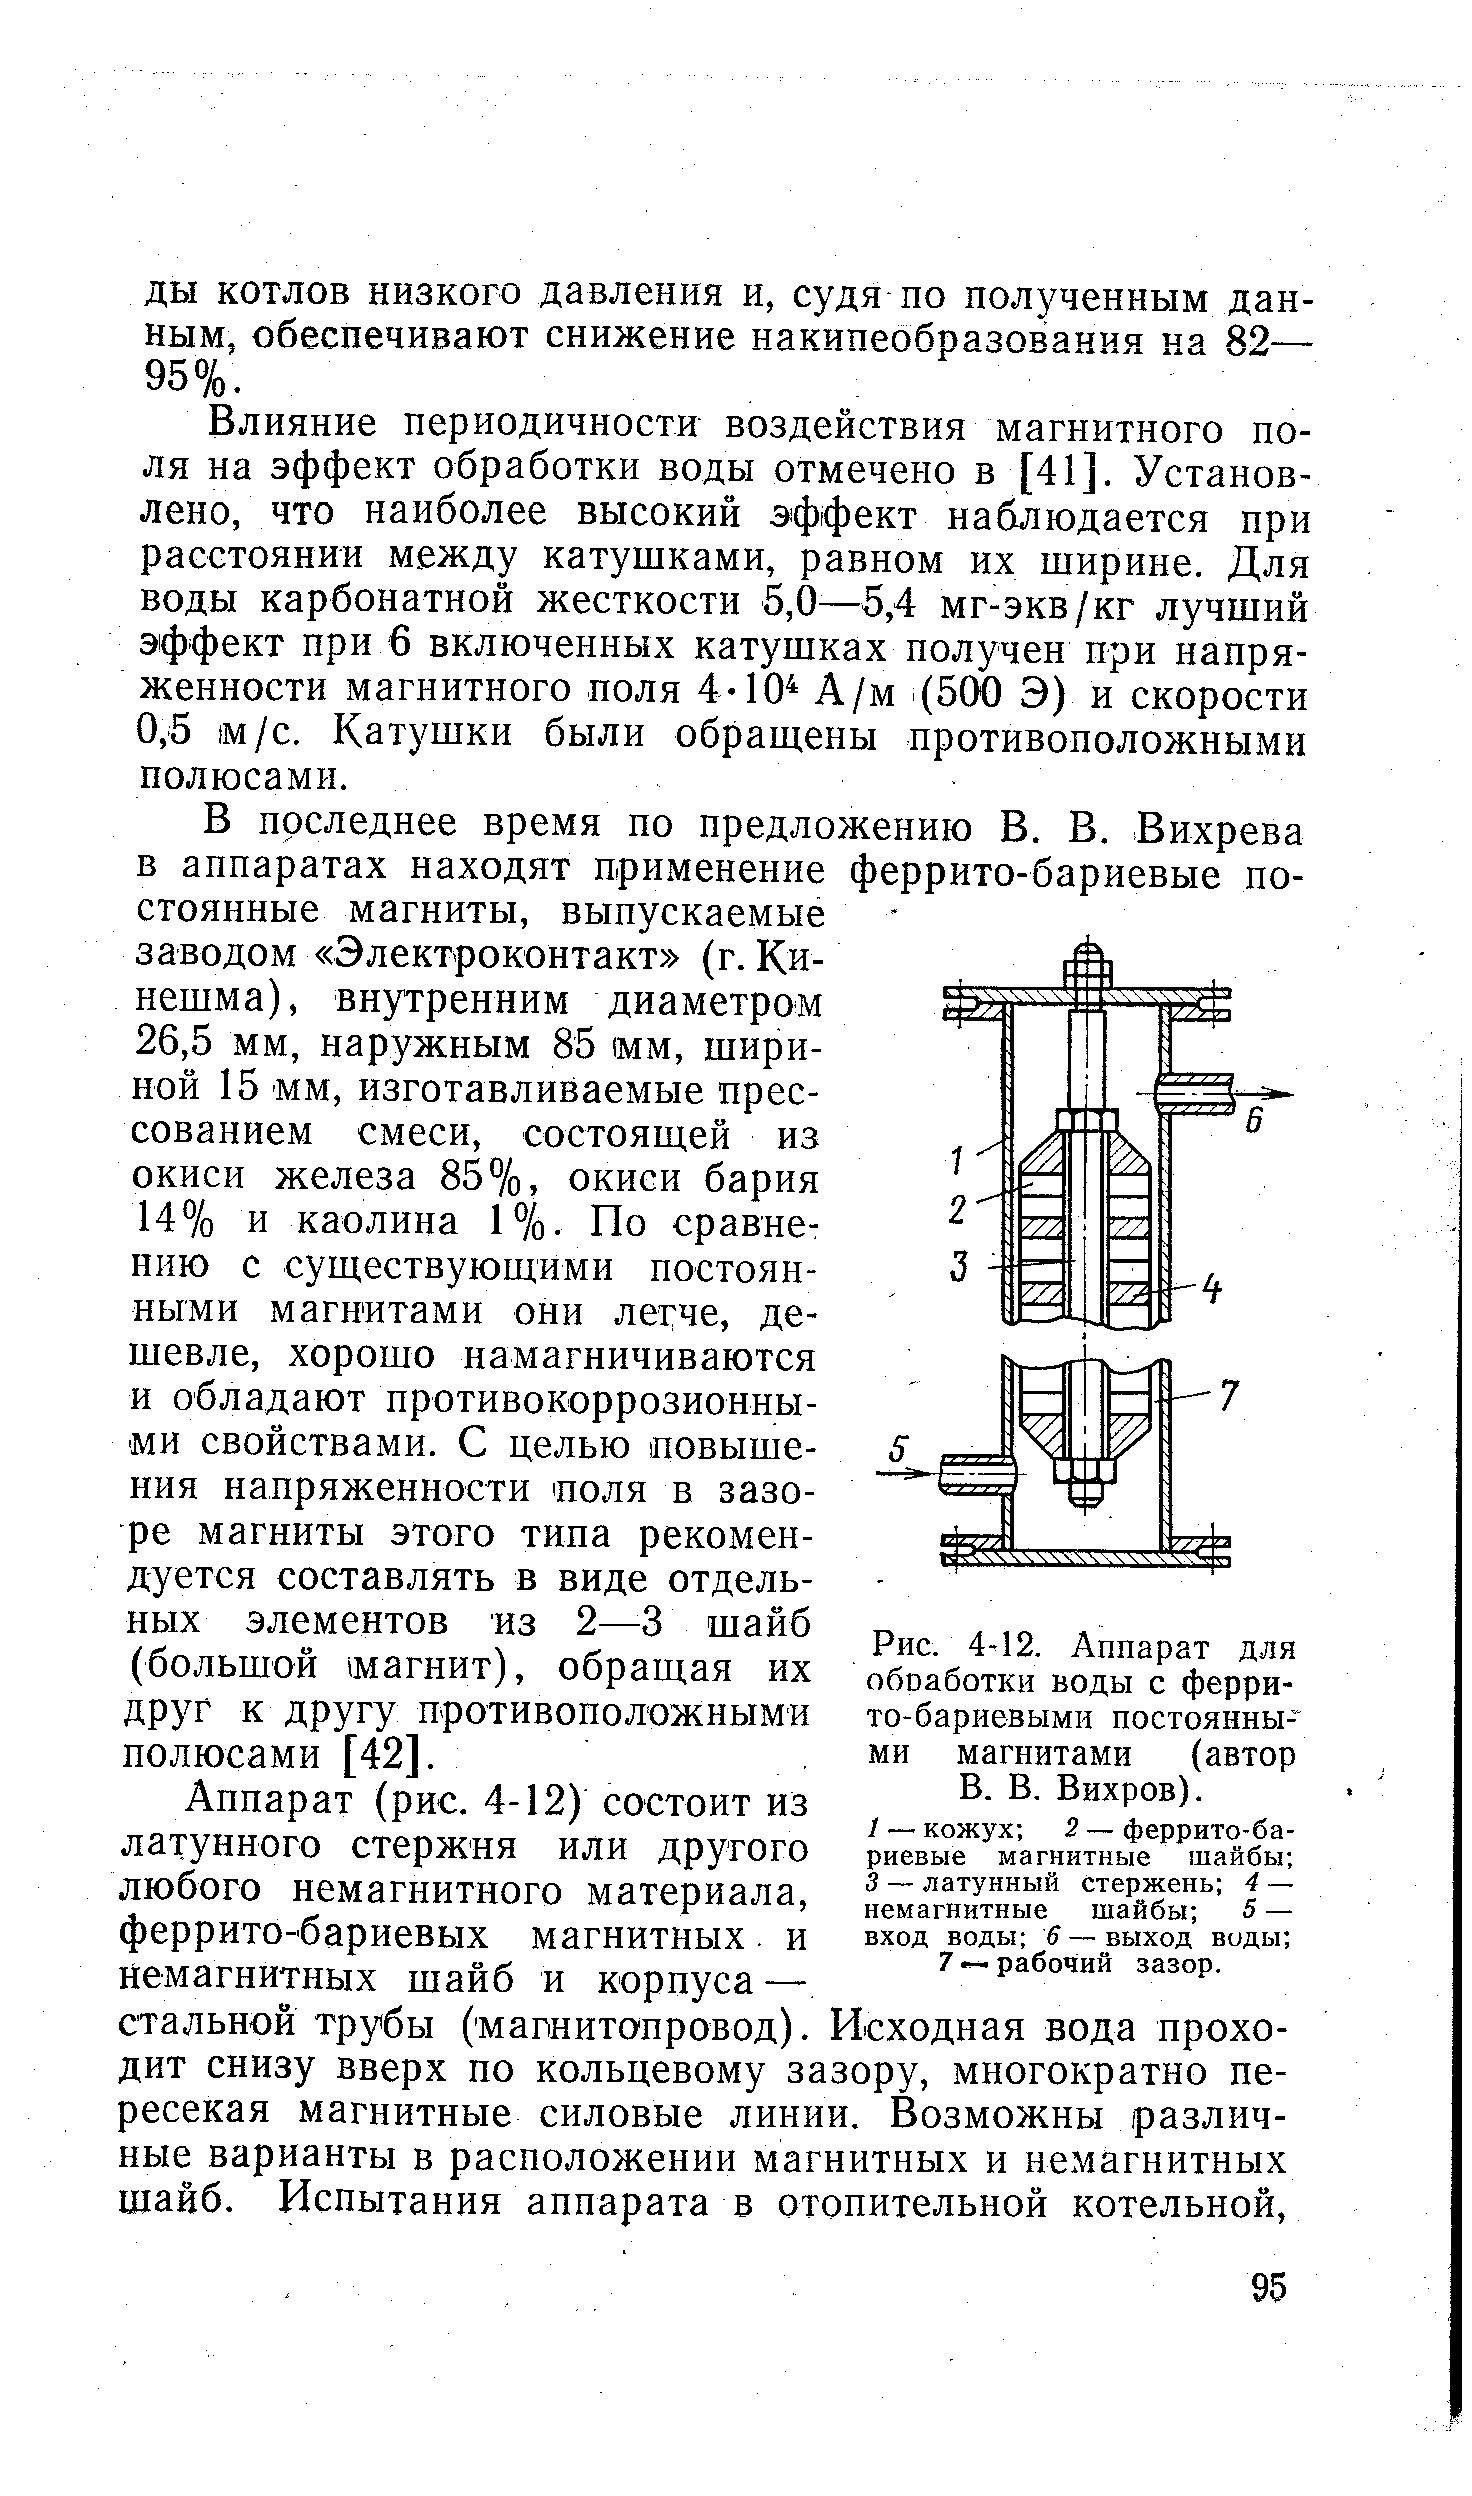 Рис. 4 12. Аппарат для обоаботки воды с ферри-то-бариевыми постоянными магнитами (автор В. В. Вихров).
